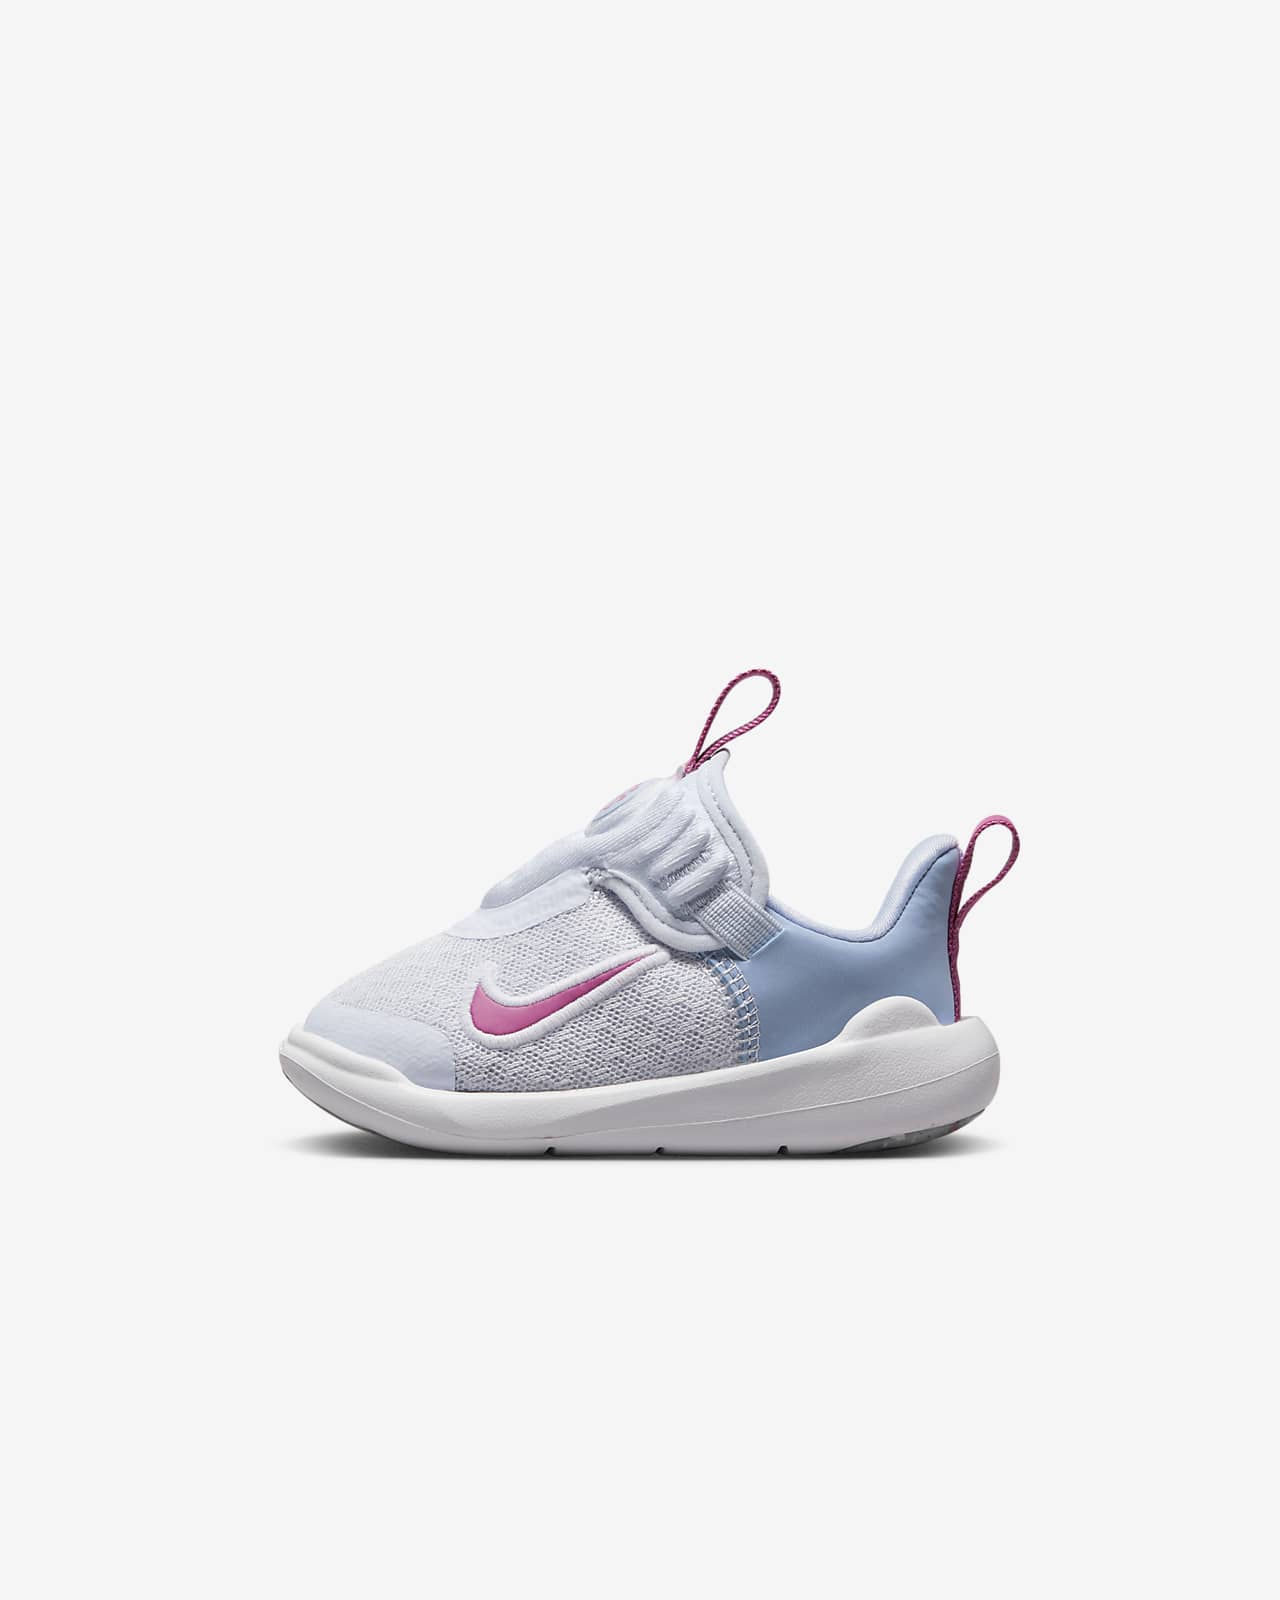 Nike E-Series 1.0 嬰幼兒鞋款